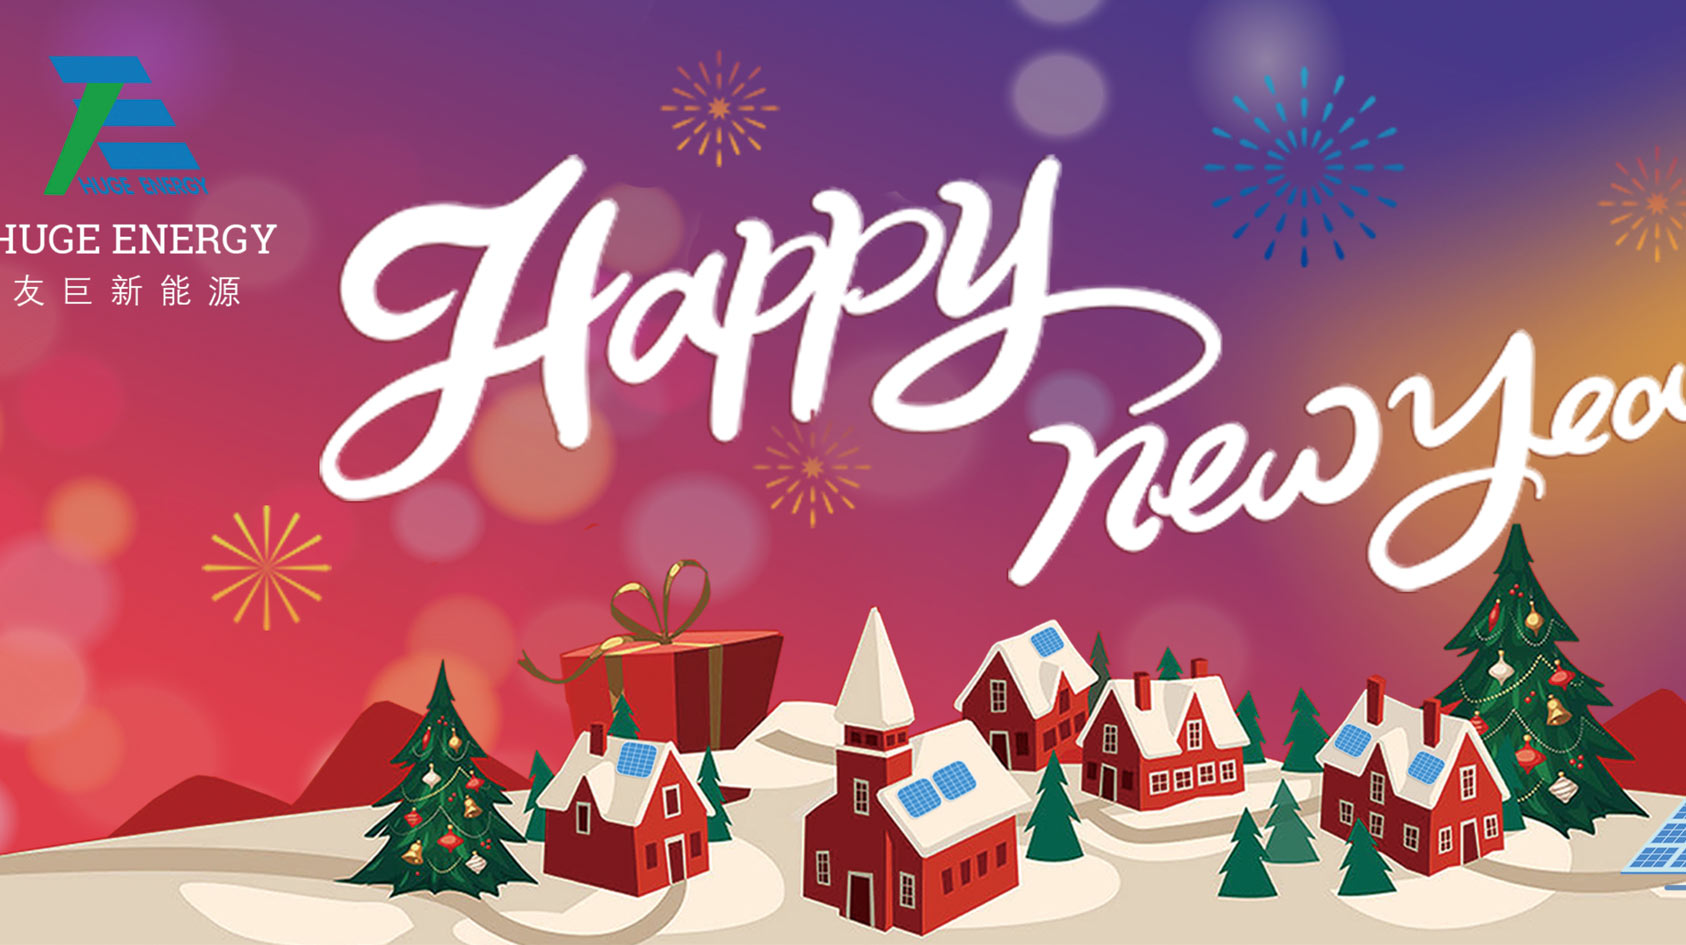 နှစ်သစ်အစတွင်၊ Huge Energy မှ သင့်အား ပျော်ရွှင်ဖွယ်နှစ်သစ်ဖြစ်ပါစေကြောင်း ဆုမွန်ကောင်းတောင်းအပ်ပါသည်။